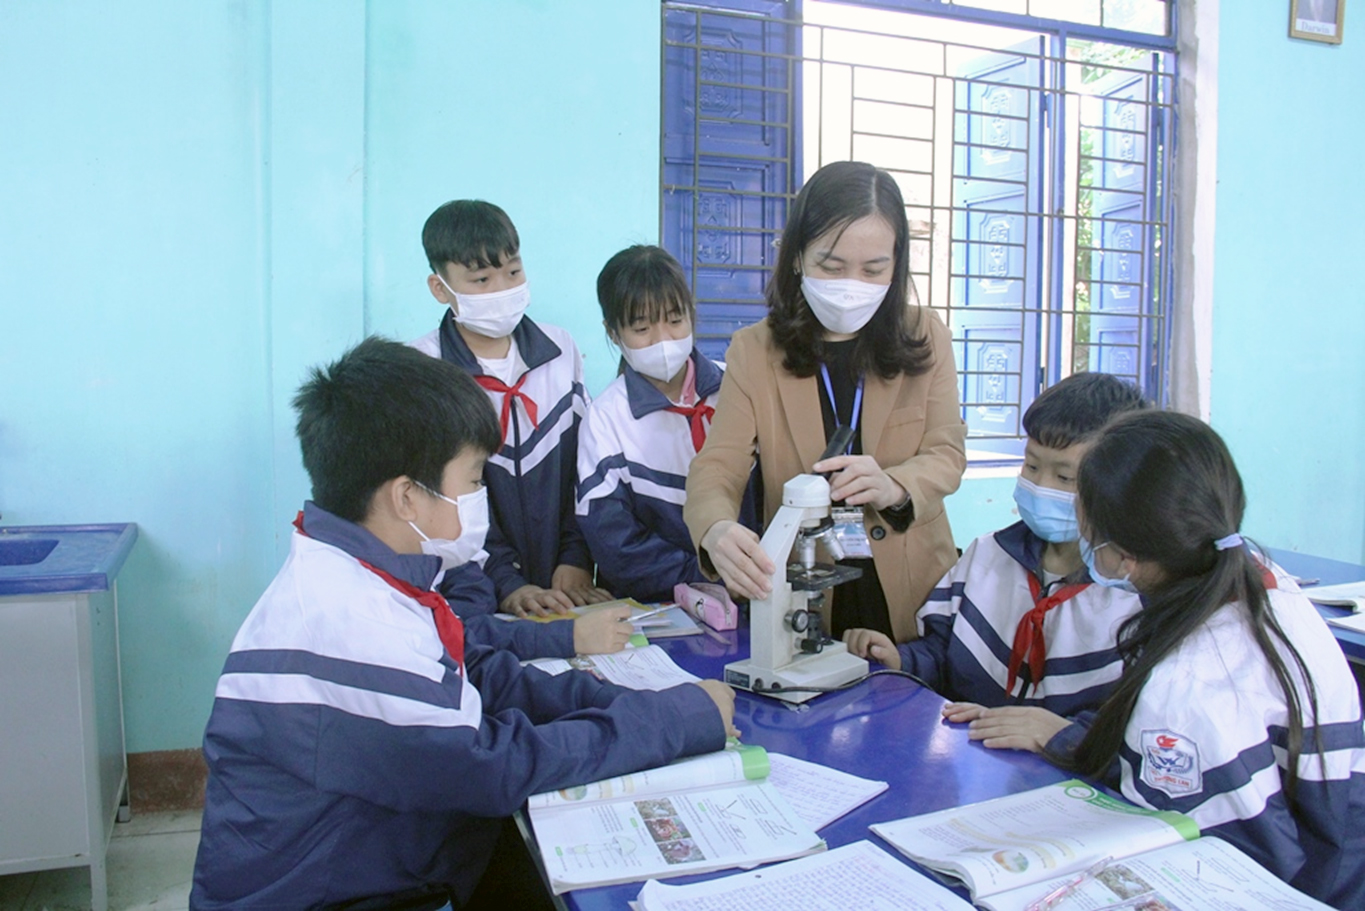 Bắc Giang - Linh hoạt trong thực hiện phân phối chương trình bậc trung học